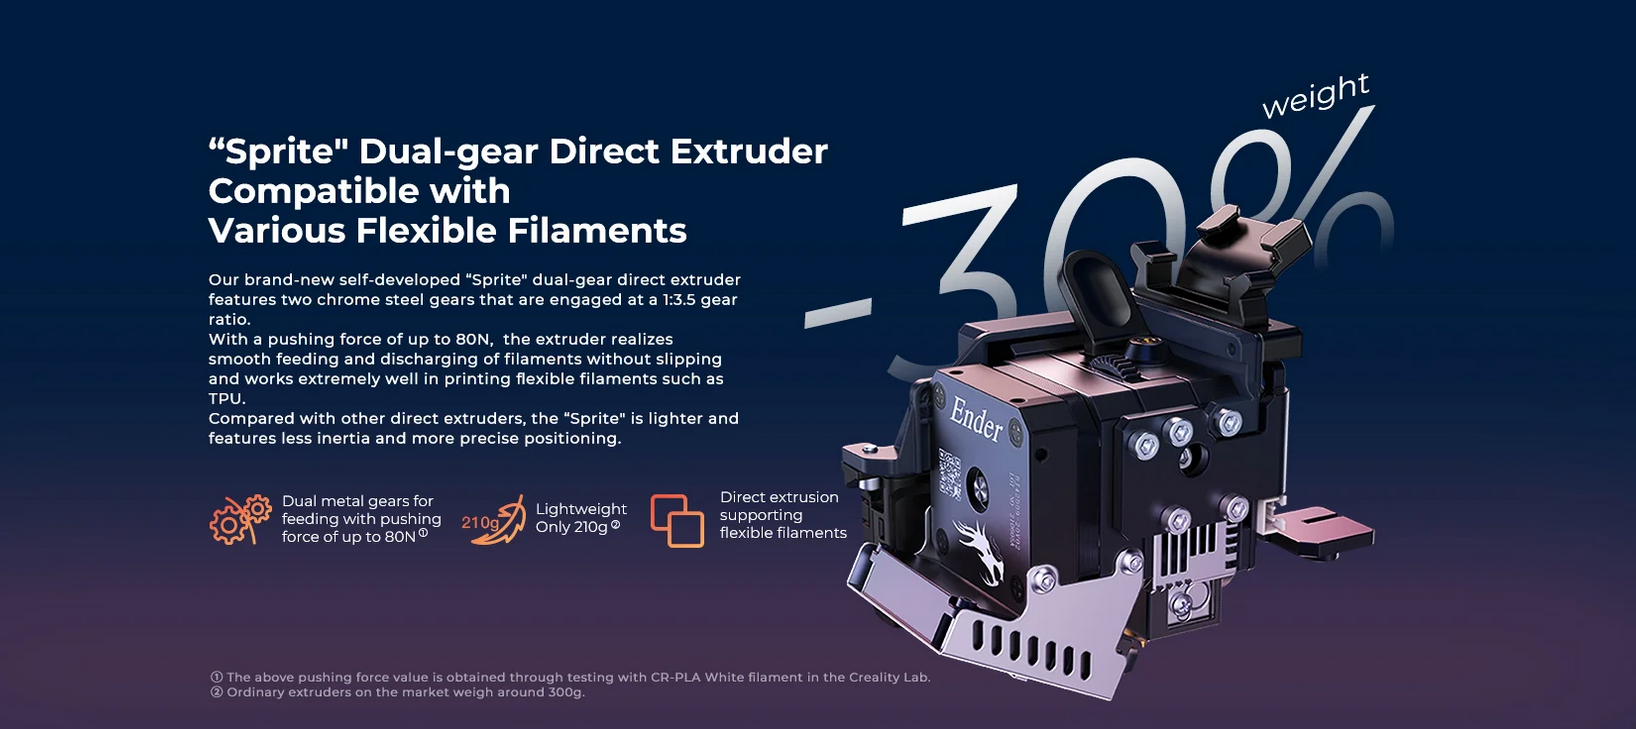 3D Printer CR-6 SE3D Printer - Creality 3D Ender-3 S1